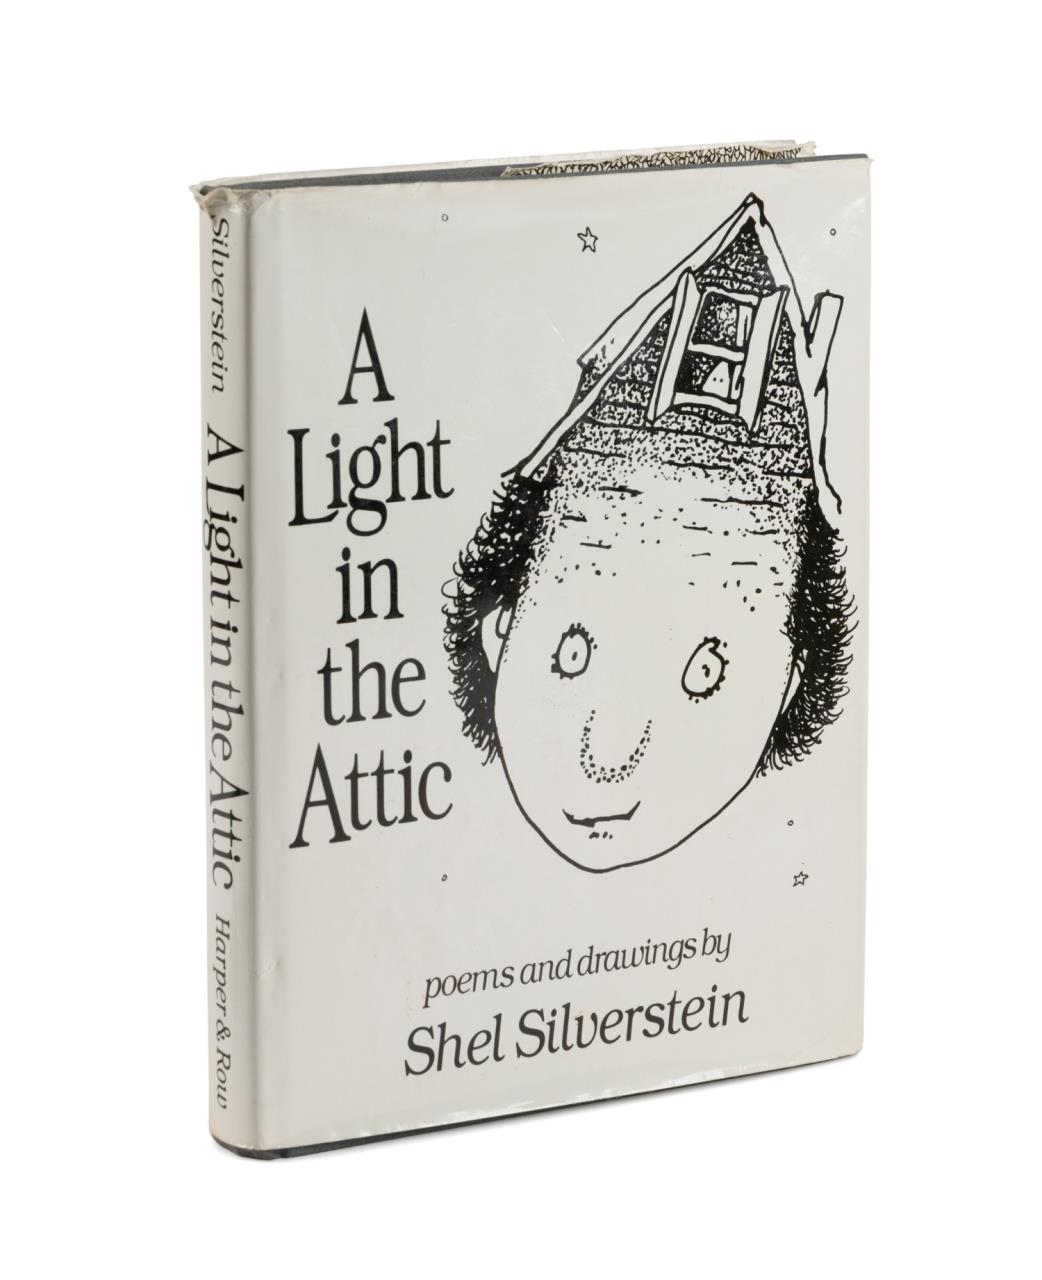 SHEL SILVERSTEIN, "A LIGHT IN THE